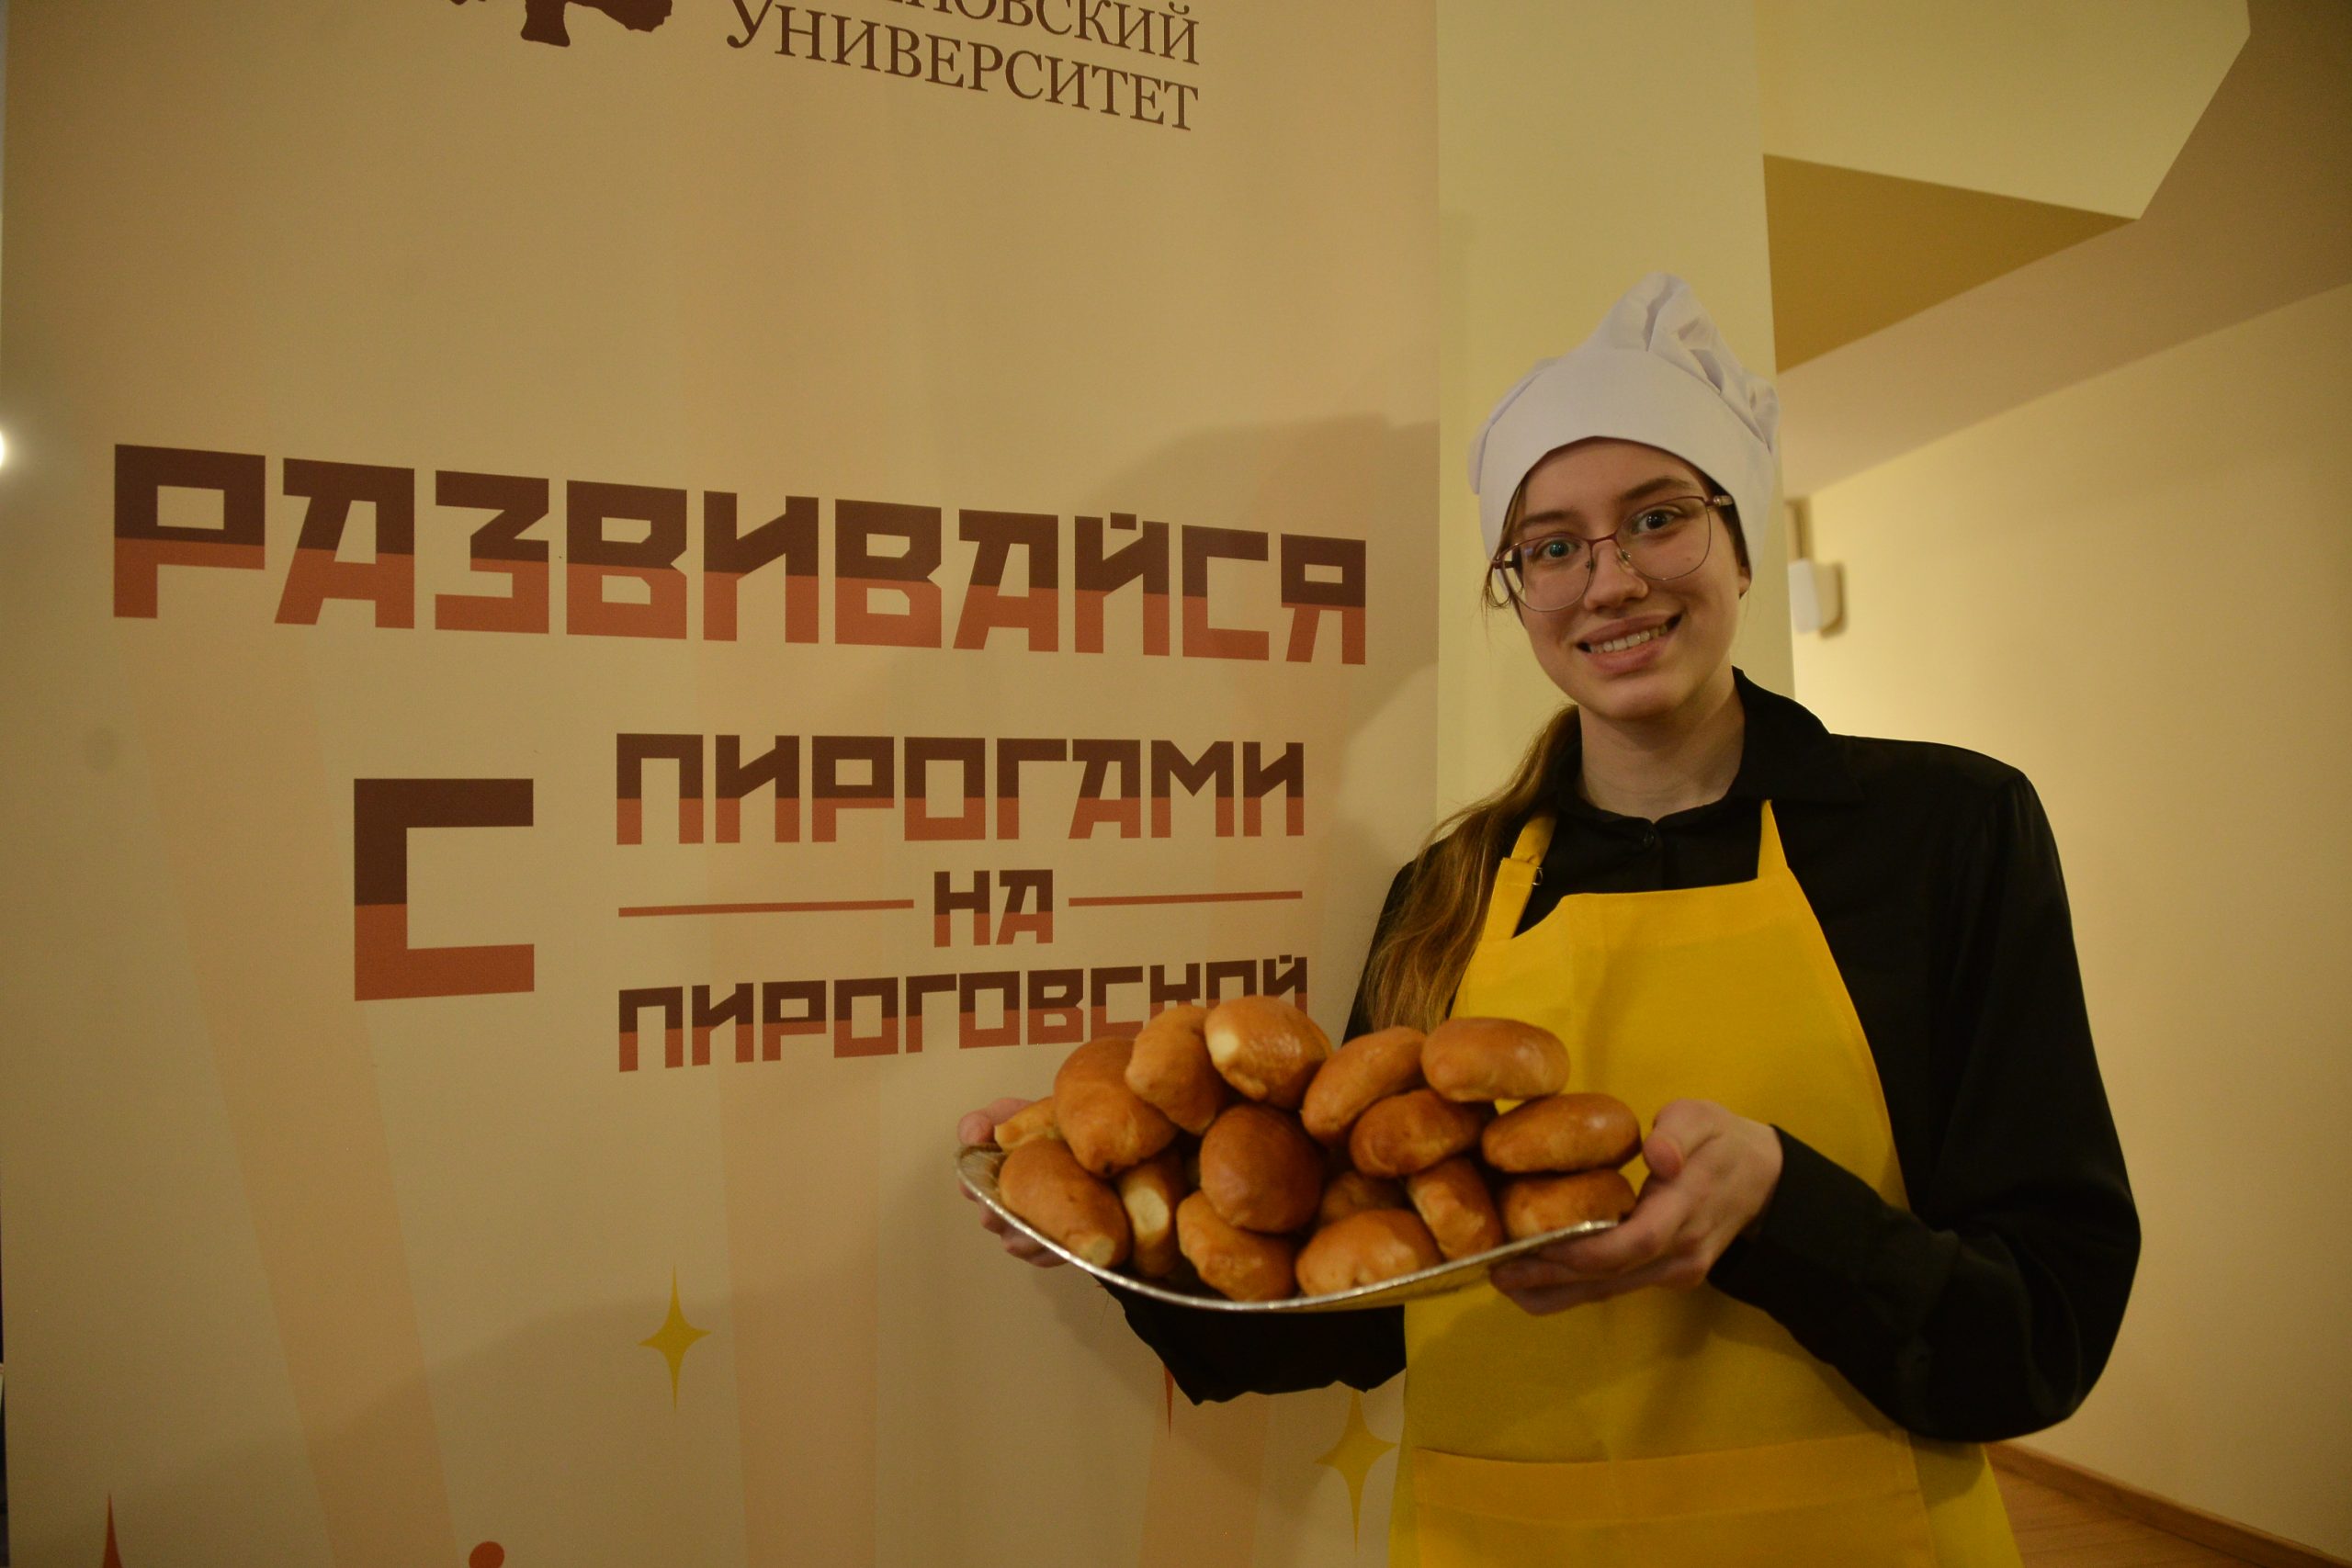 Студентка Виктория Вильмс выносит пироги, приготовленные специально для праздника. Фото: Анна Малакмадзе, «Вечерняя Москва»